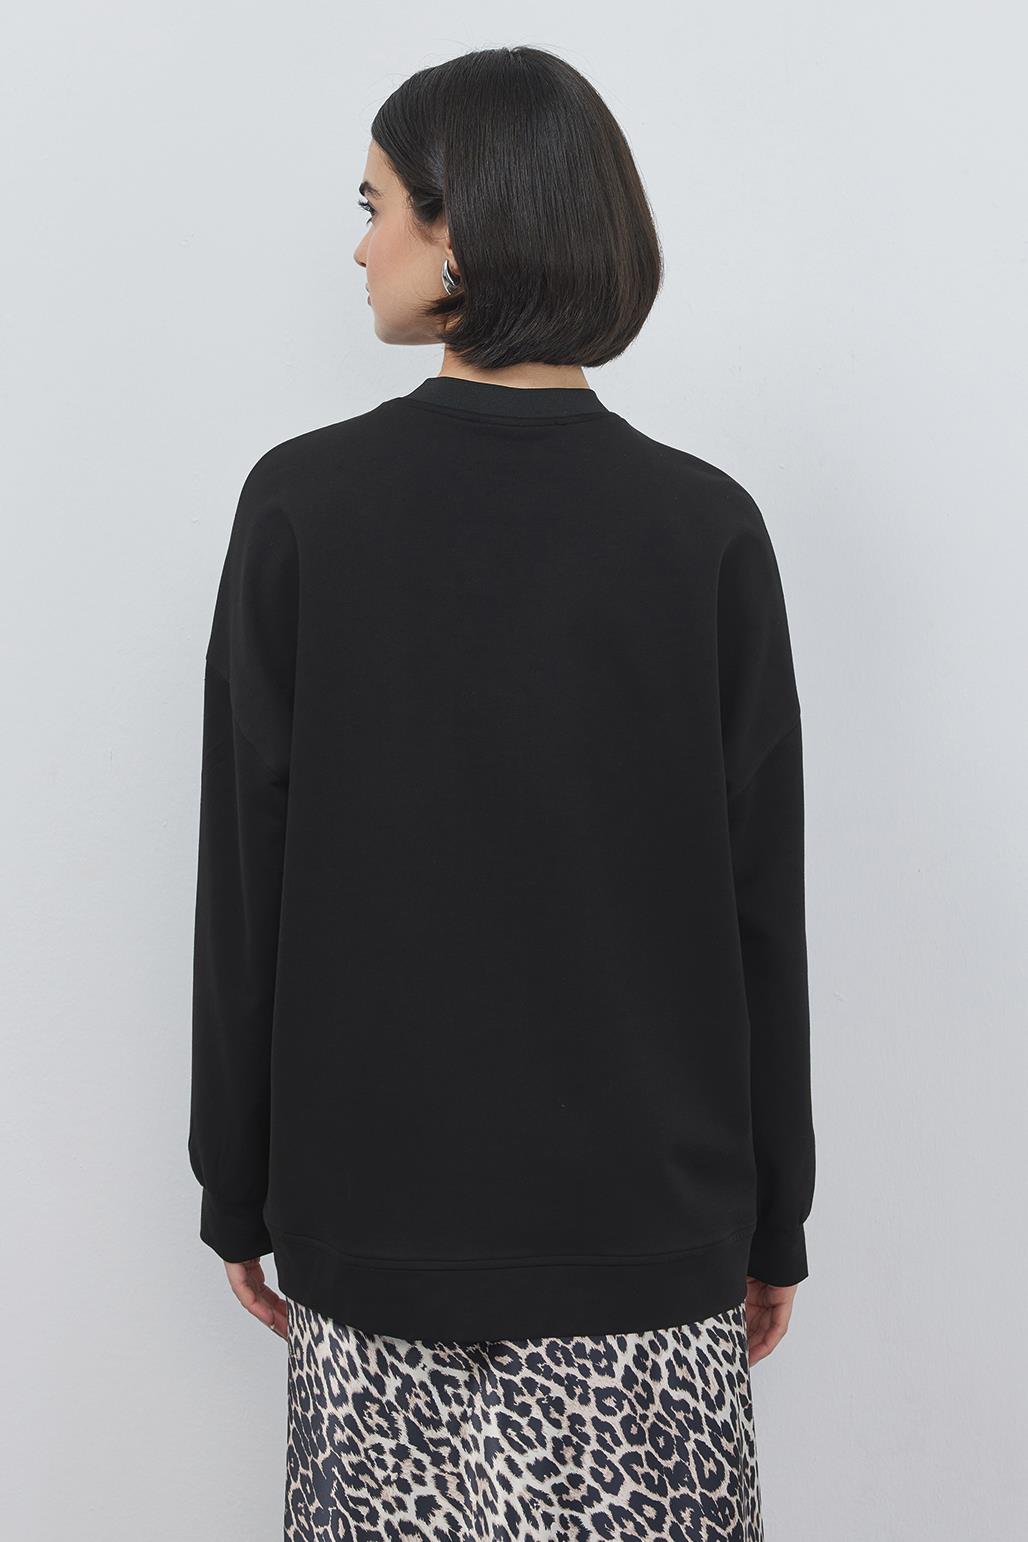 Poen Oversize Sweatshirt Black